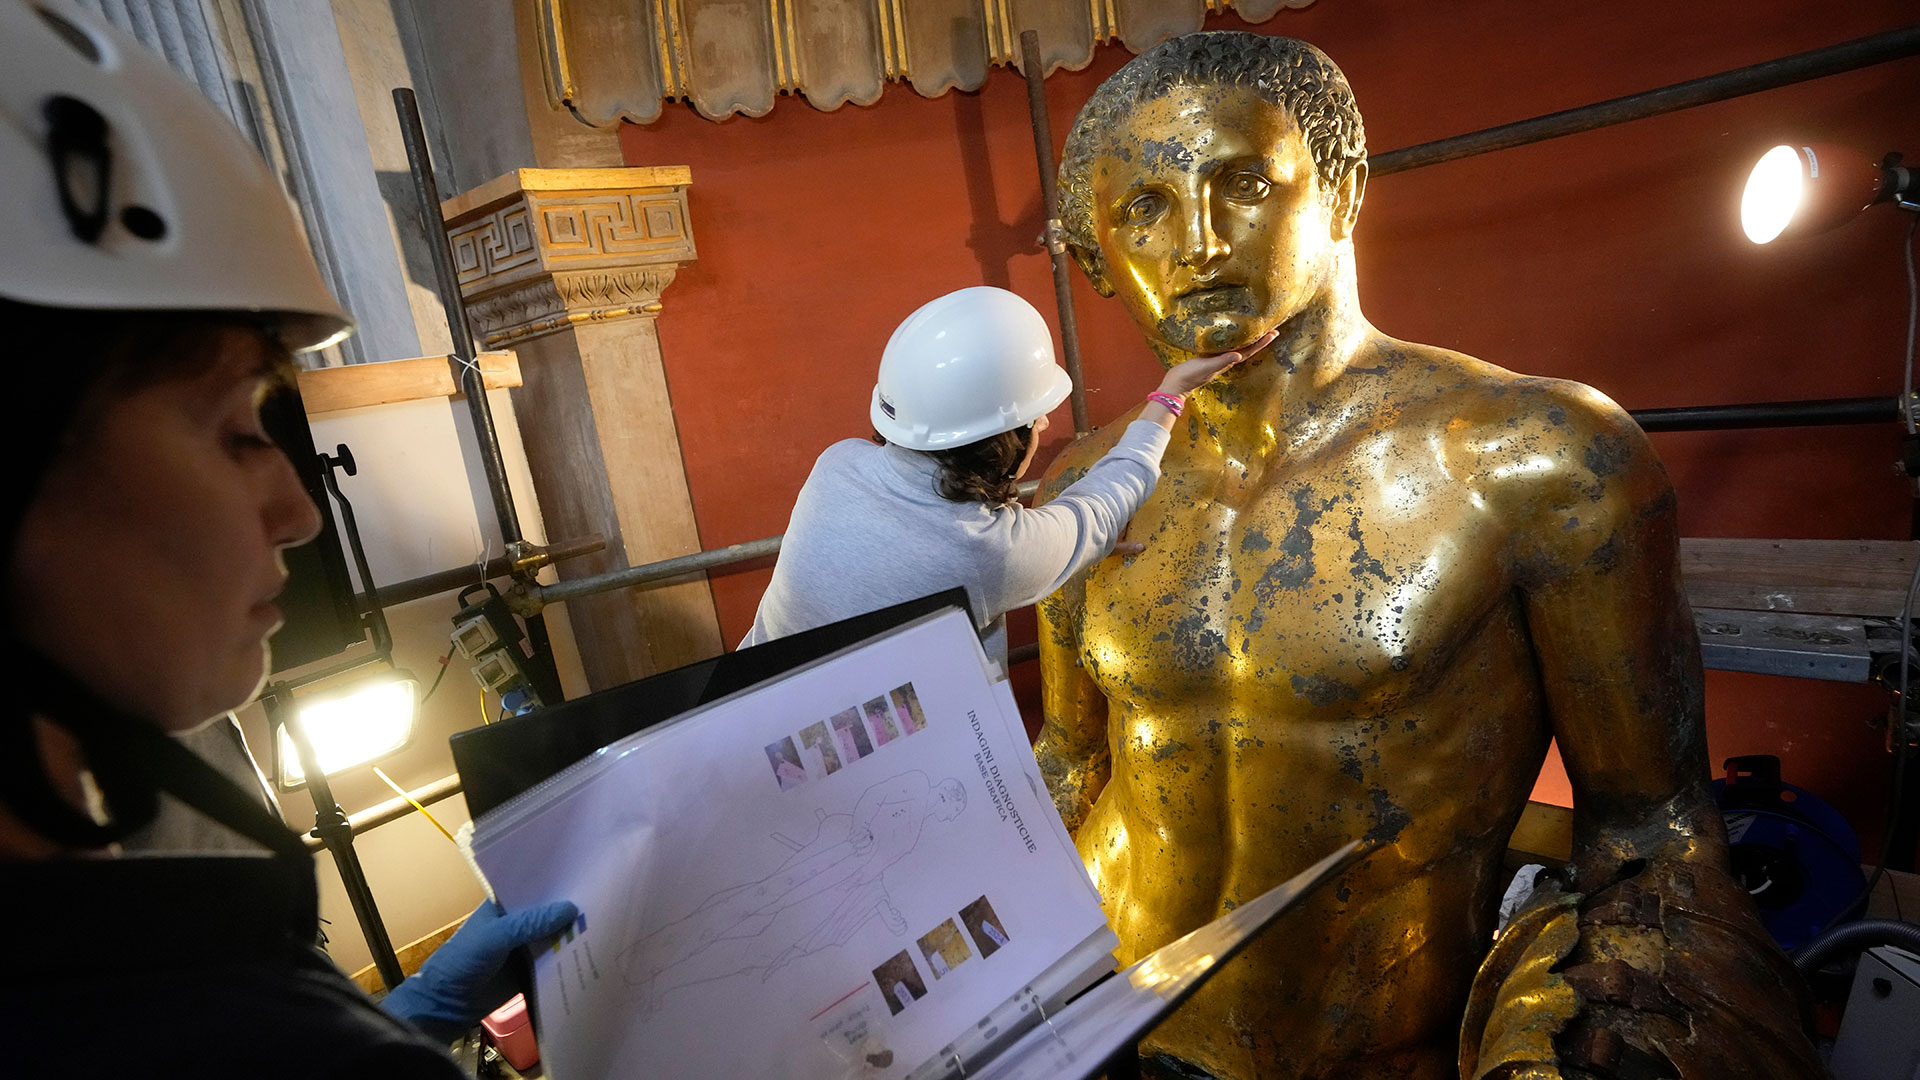 Los trabajos continuarán hasta diciembre para devolver su brillo dorado original al Hércules de 4 metros de altura, que se cree que estuvo en el Teatro Pompeyo de la antigua Roma (AP Photo/Andrew Medichini)